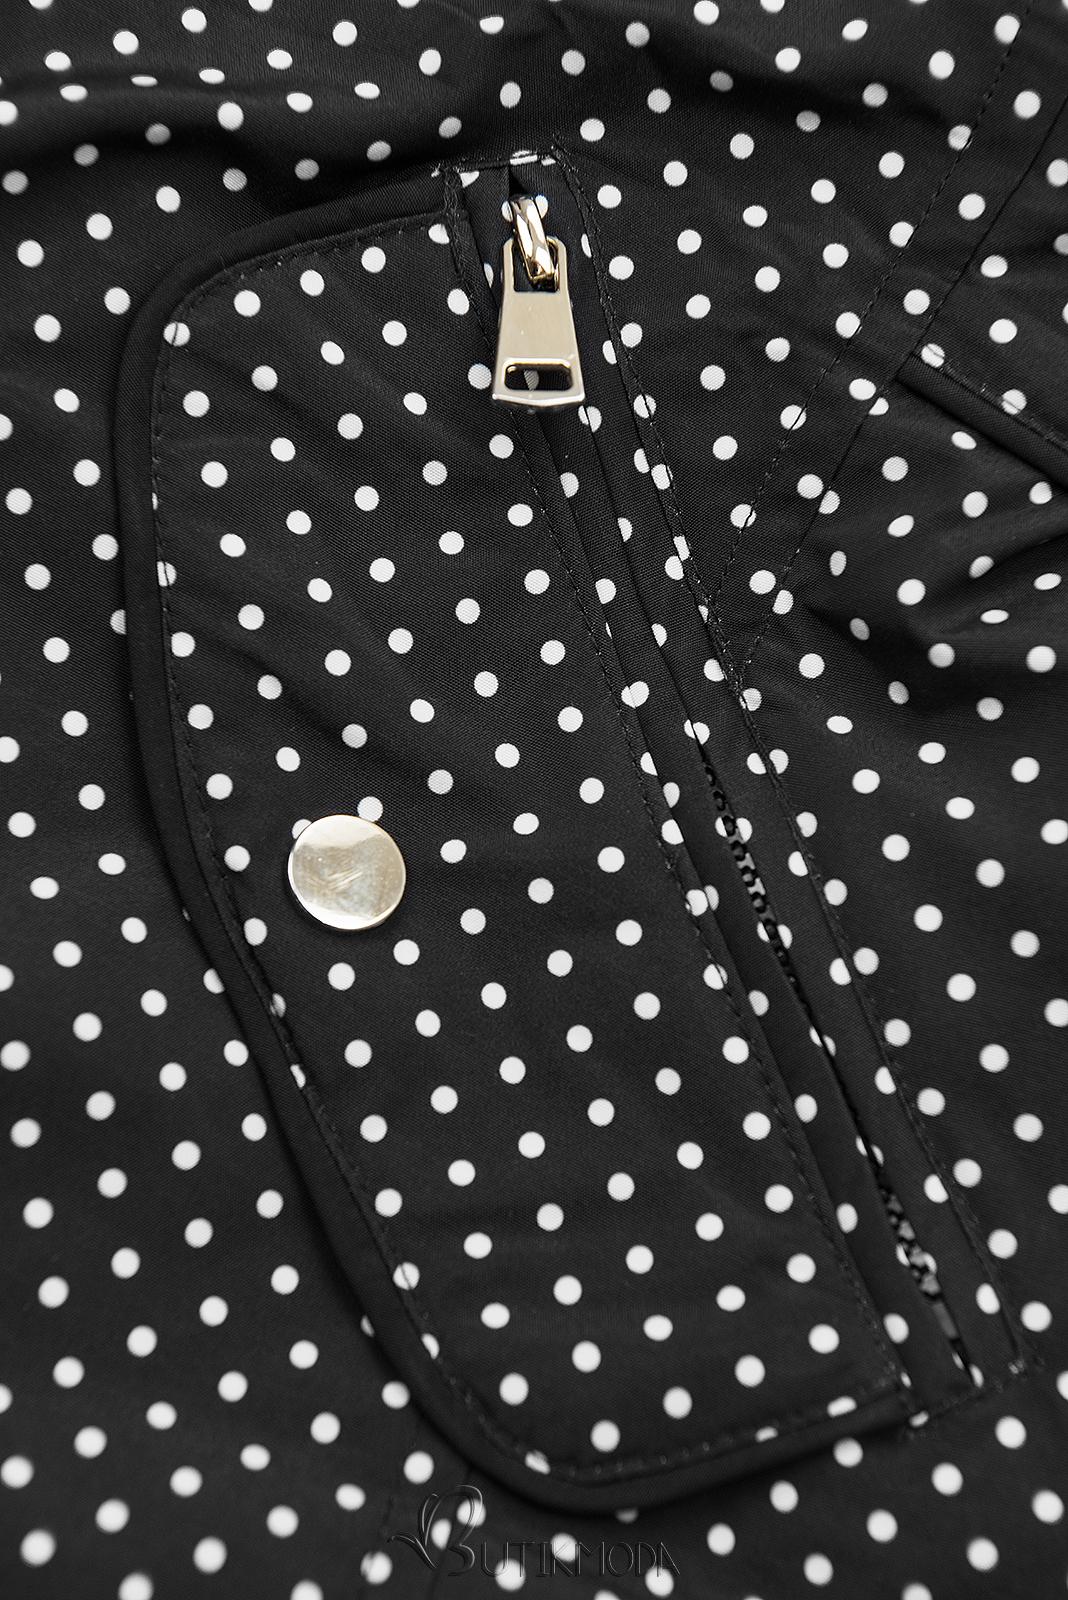 Fekete és karamellszínű pöttyös kifordítható kabát